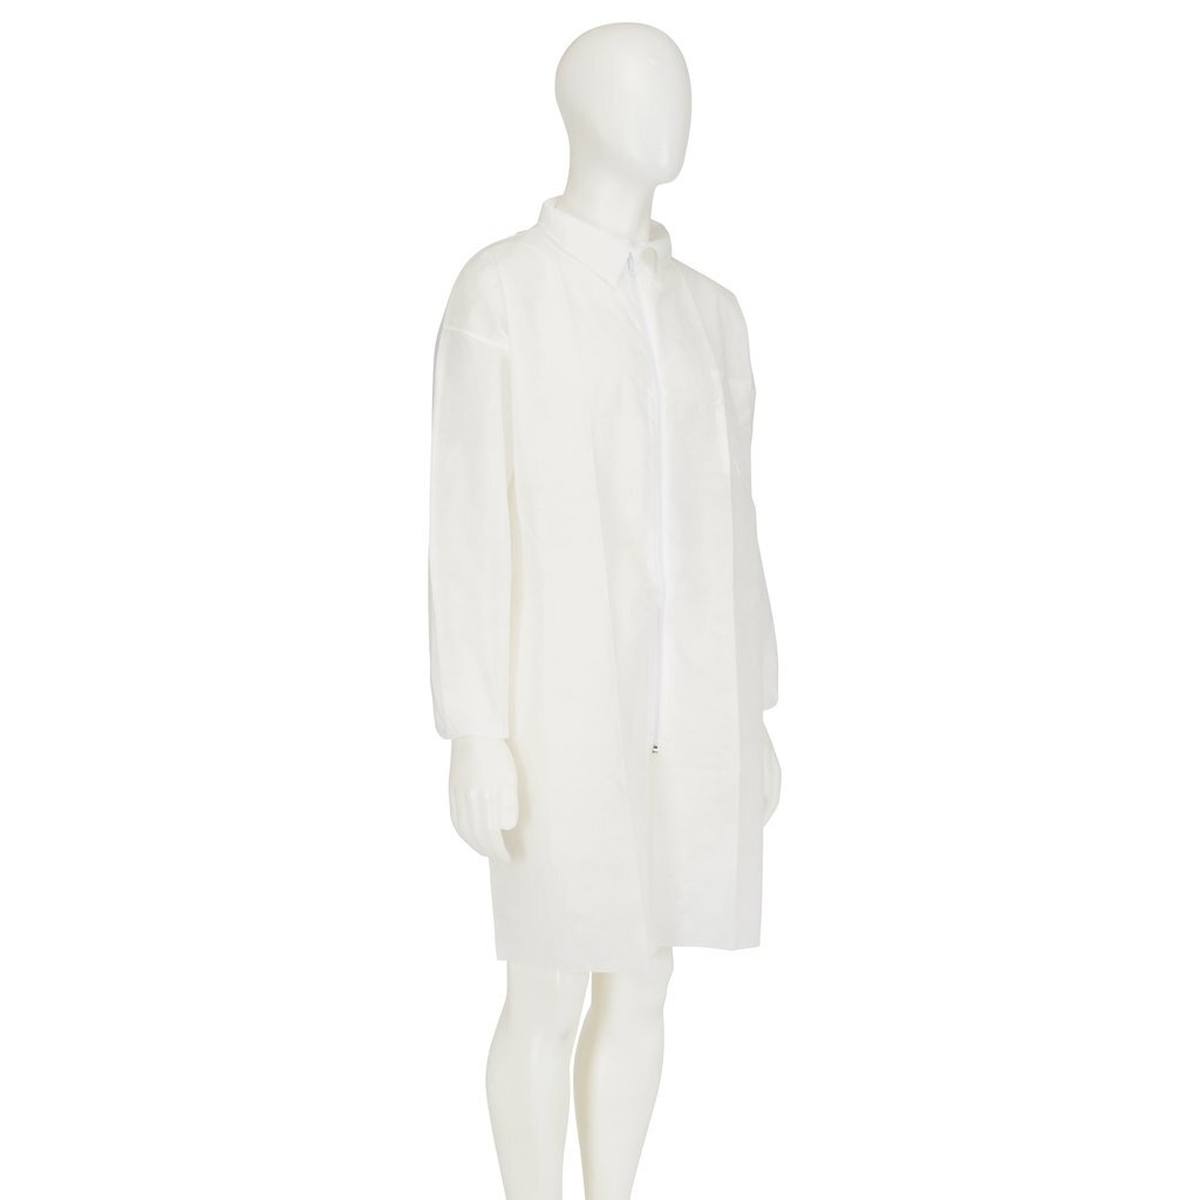 cappotto 3M 4400, bianco, taglia 4XL, materiale 100% polipropilene, traspirante, molto leggero, con chiusura a zip